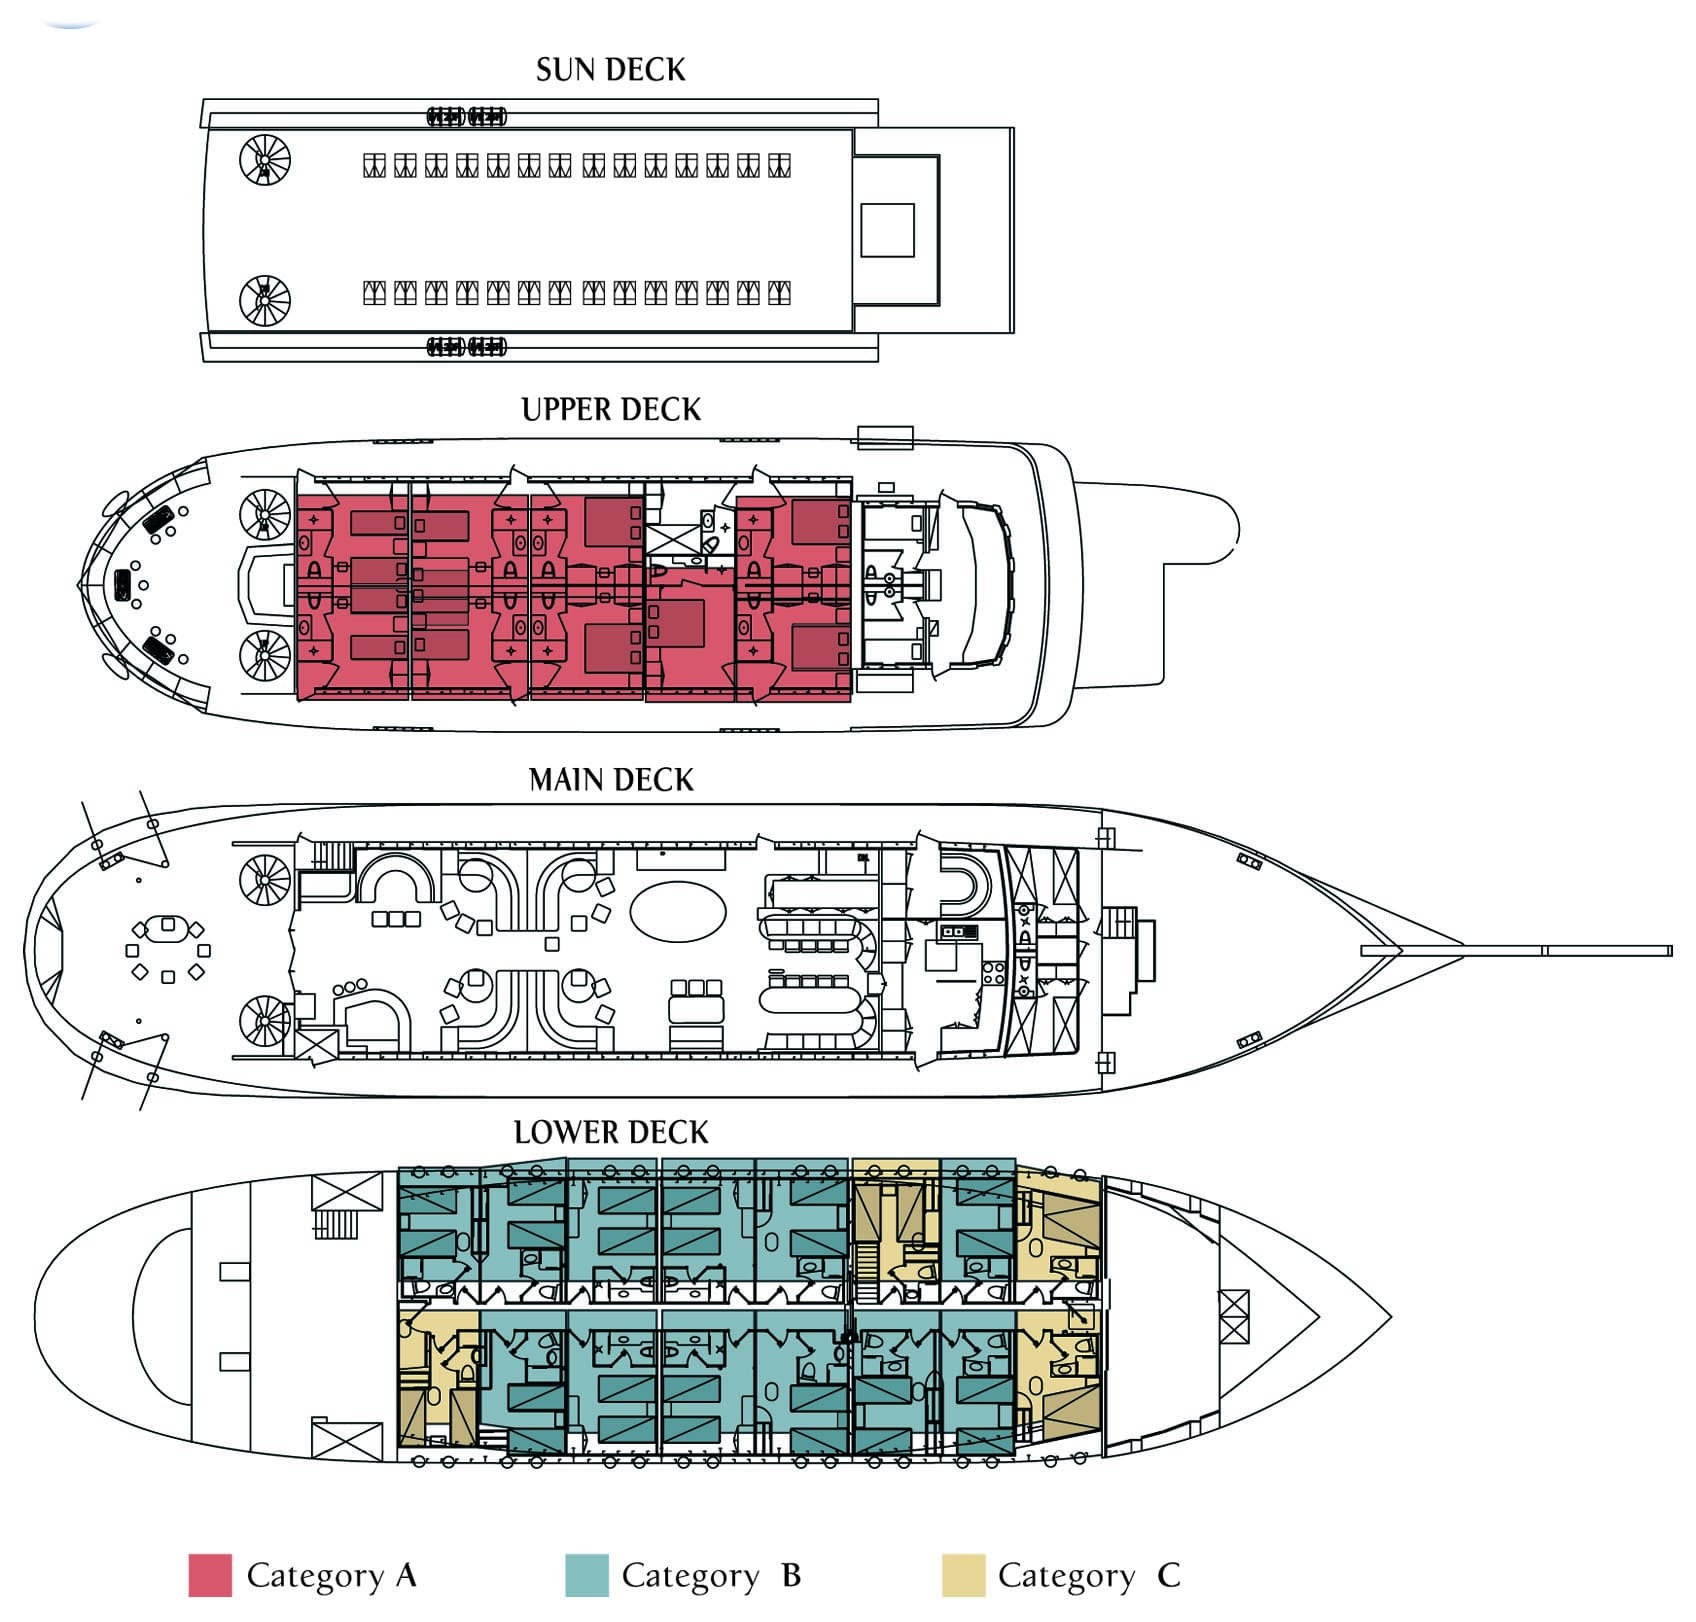 Galileo Mediterreanean ship deck plan showing 4 decks.